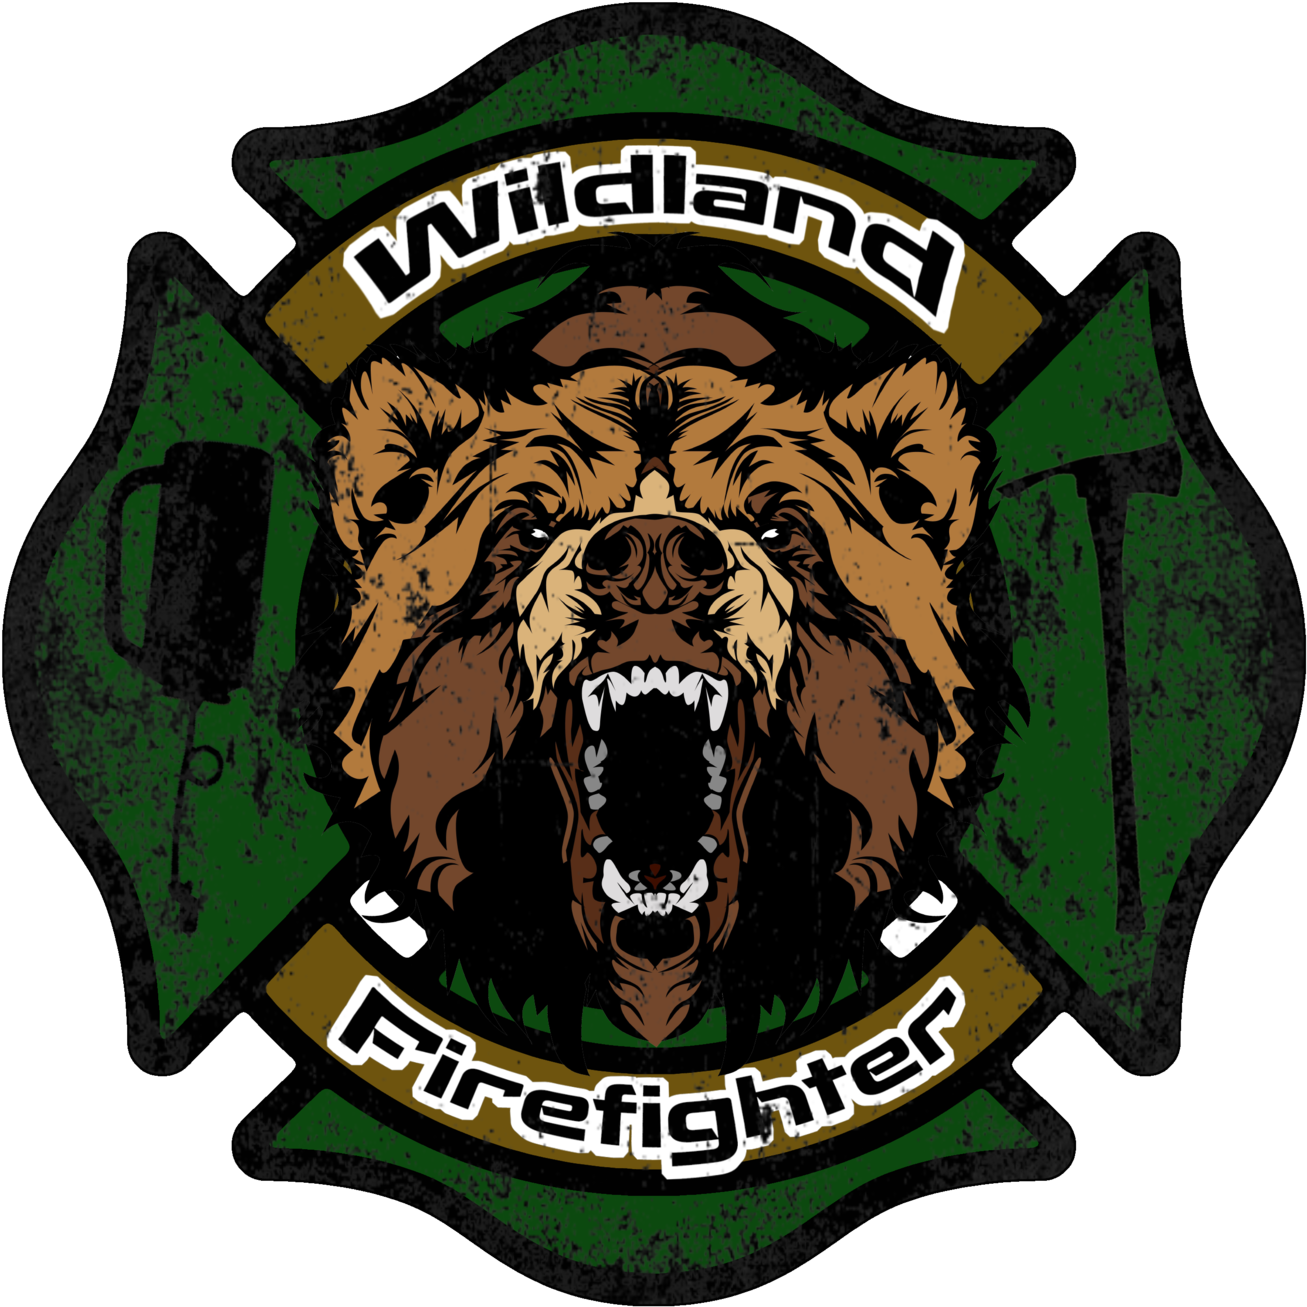 Wildland Firefighter Decal - Wildland Firefighter Patch (1400x1391)